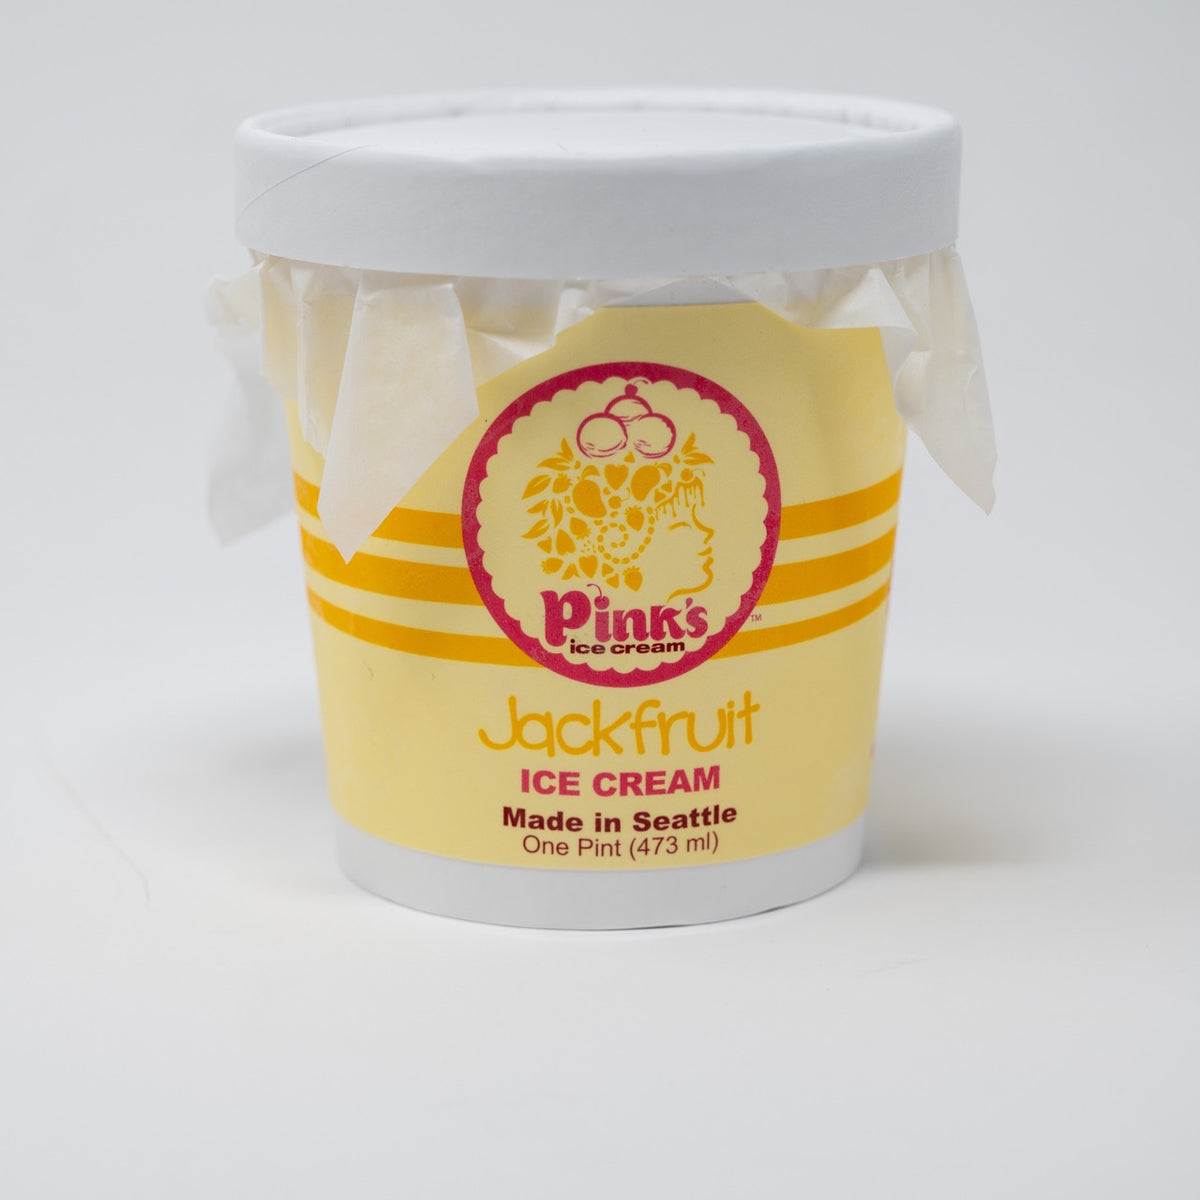 Jackfruit Ice Cream Pint